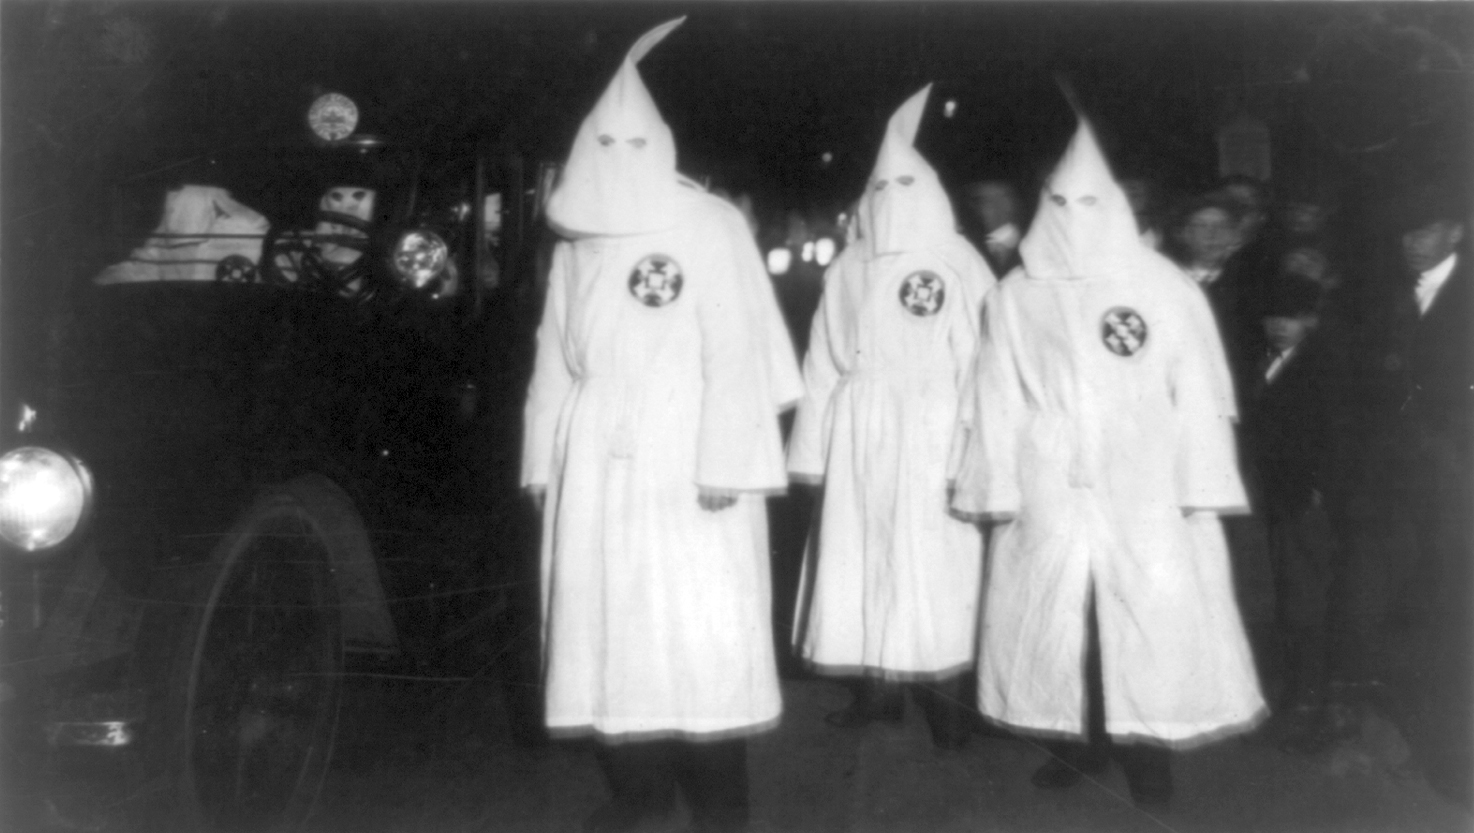 Ku Klux Klan abre portas a judeus, afro-americanos e homossexuais